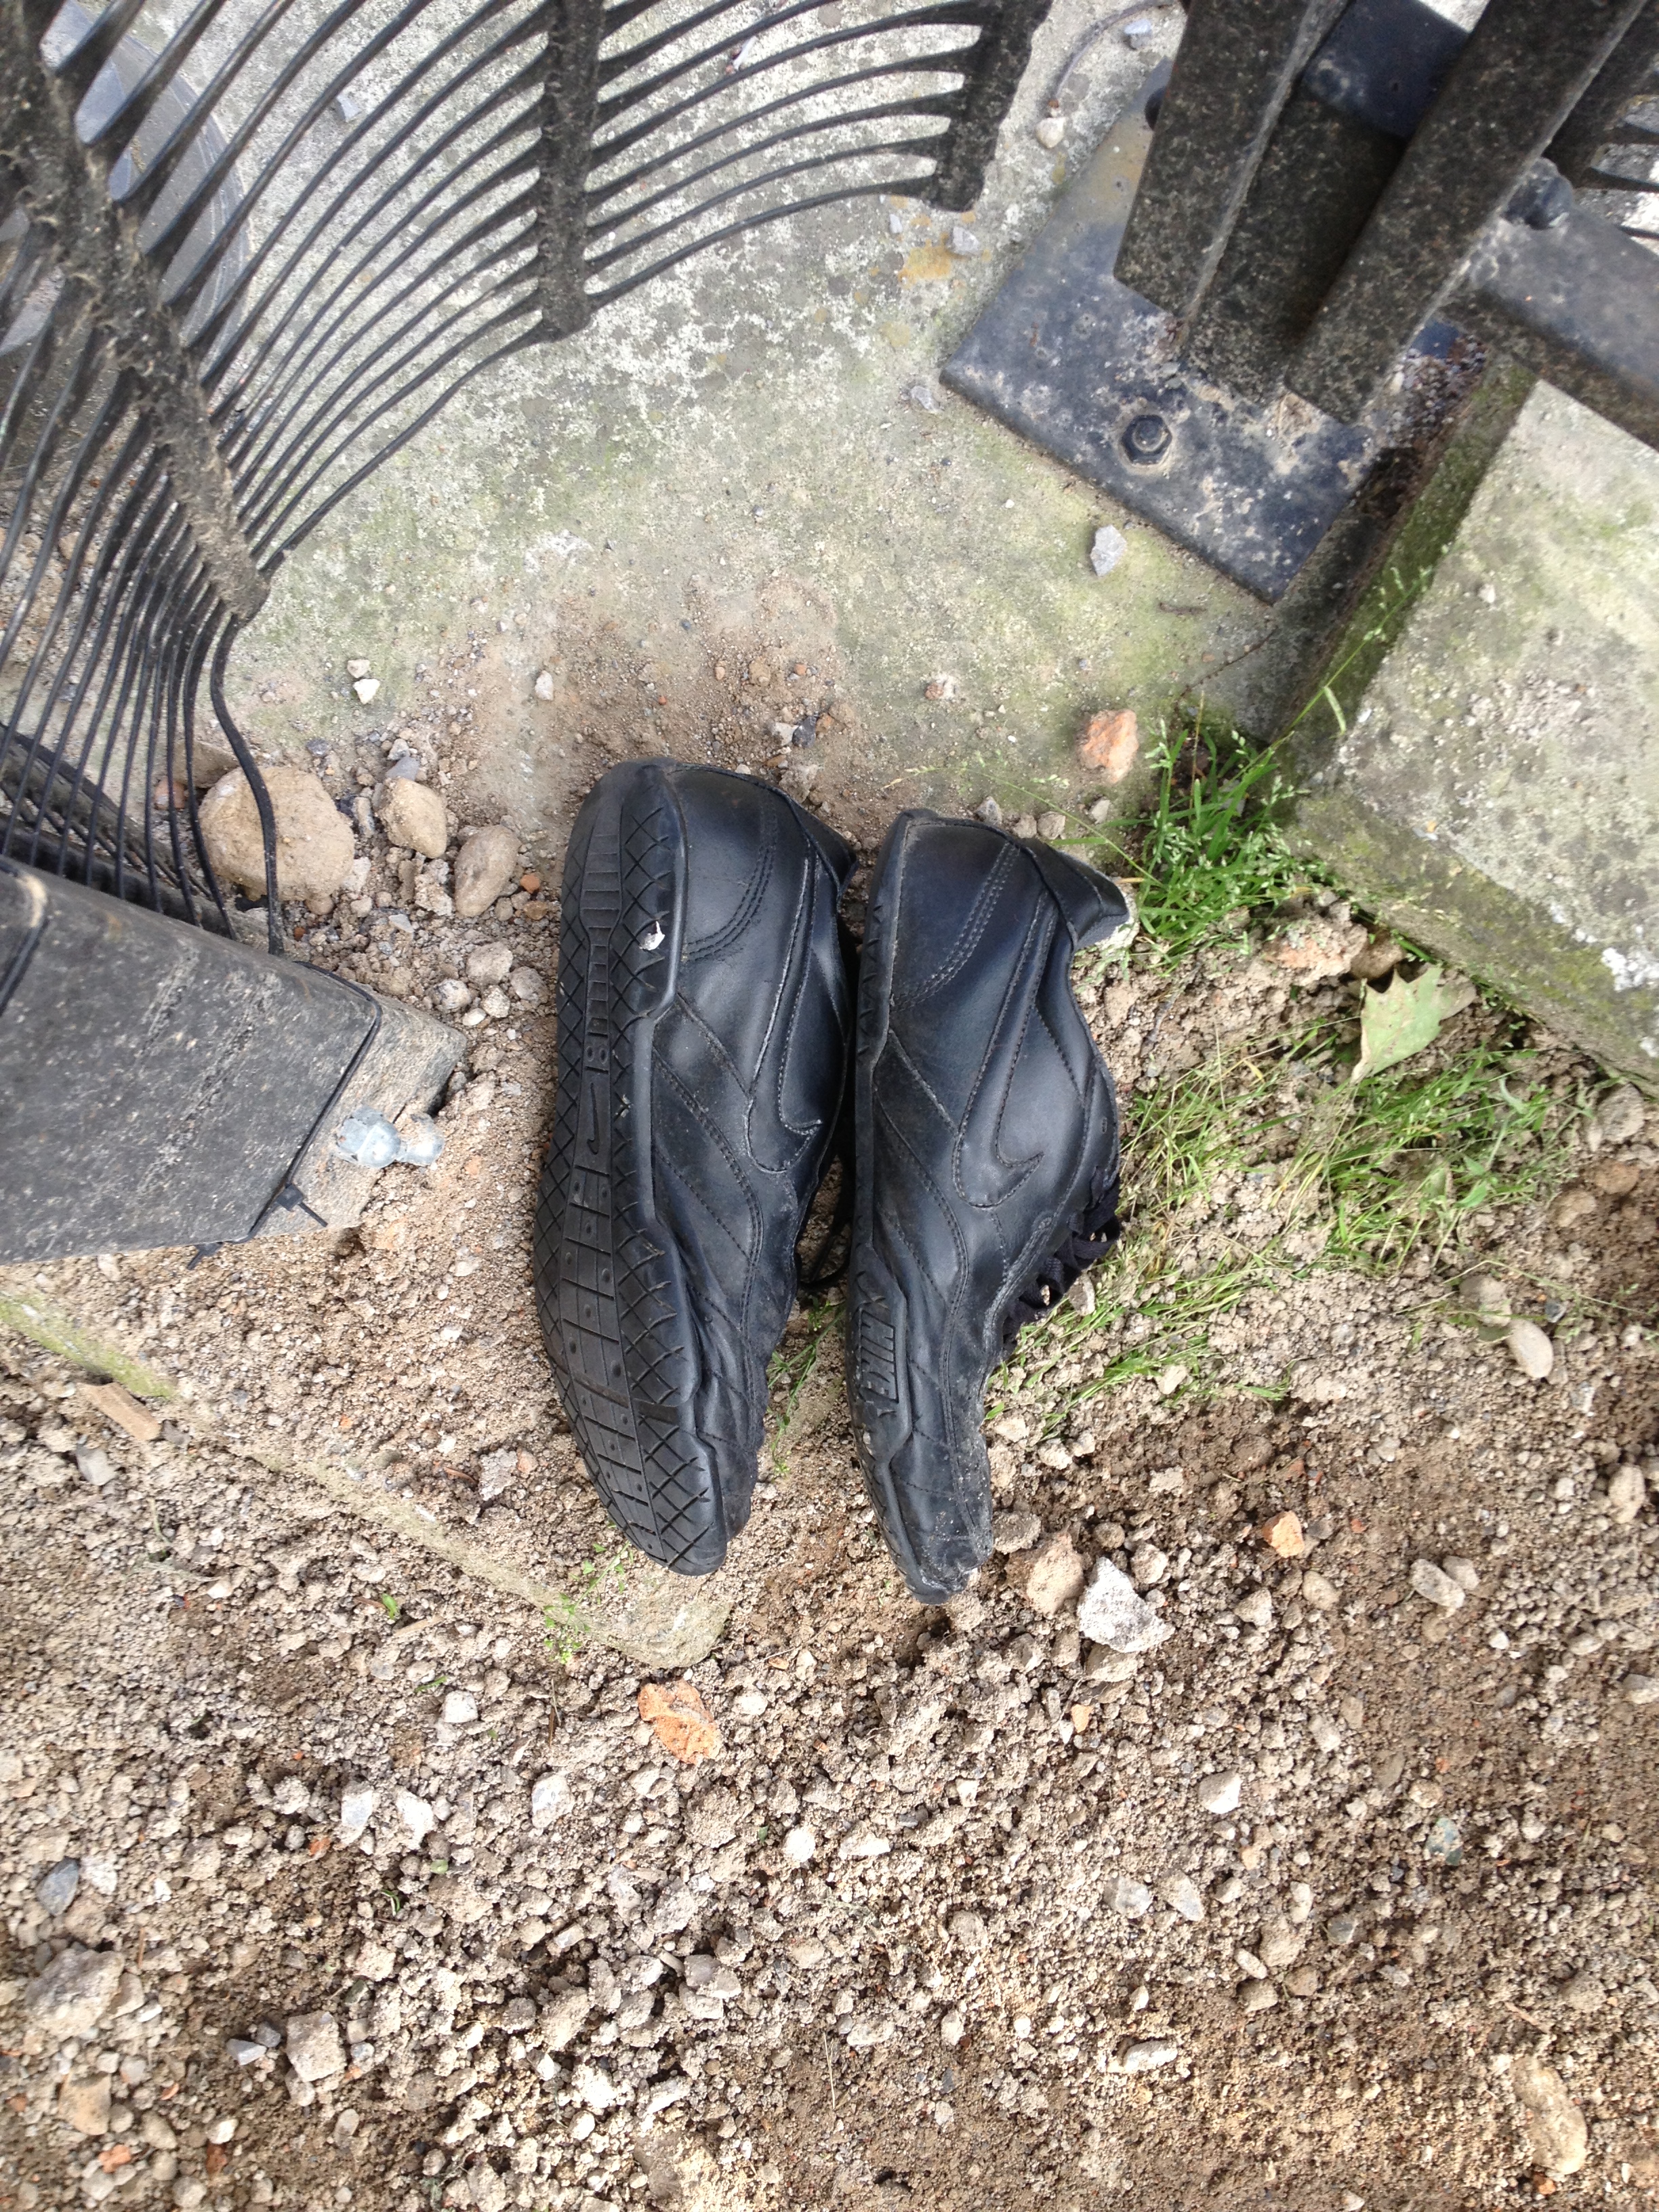 Scarpe trovate a Cernusco sul Naviglio. POtrebbe averle abbandonate un qualche corridore, sembrano comode.